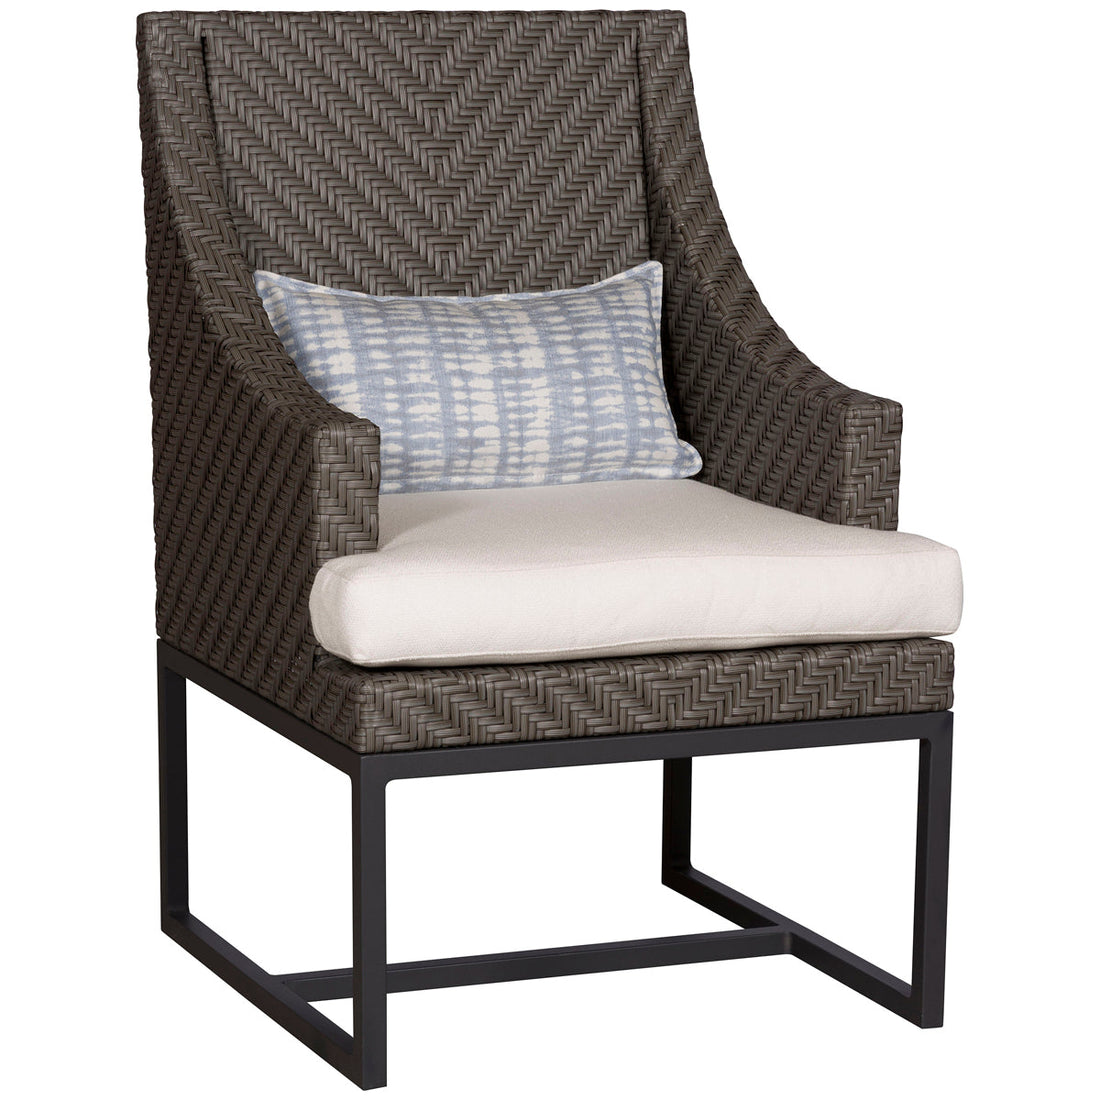 Vanguard Furniture Bridgehampton Outdoor Arm Chair